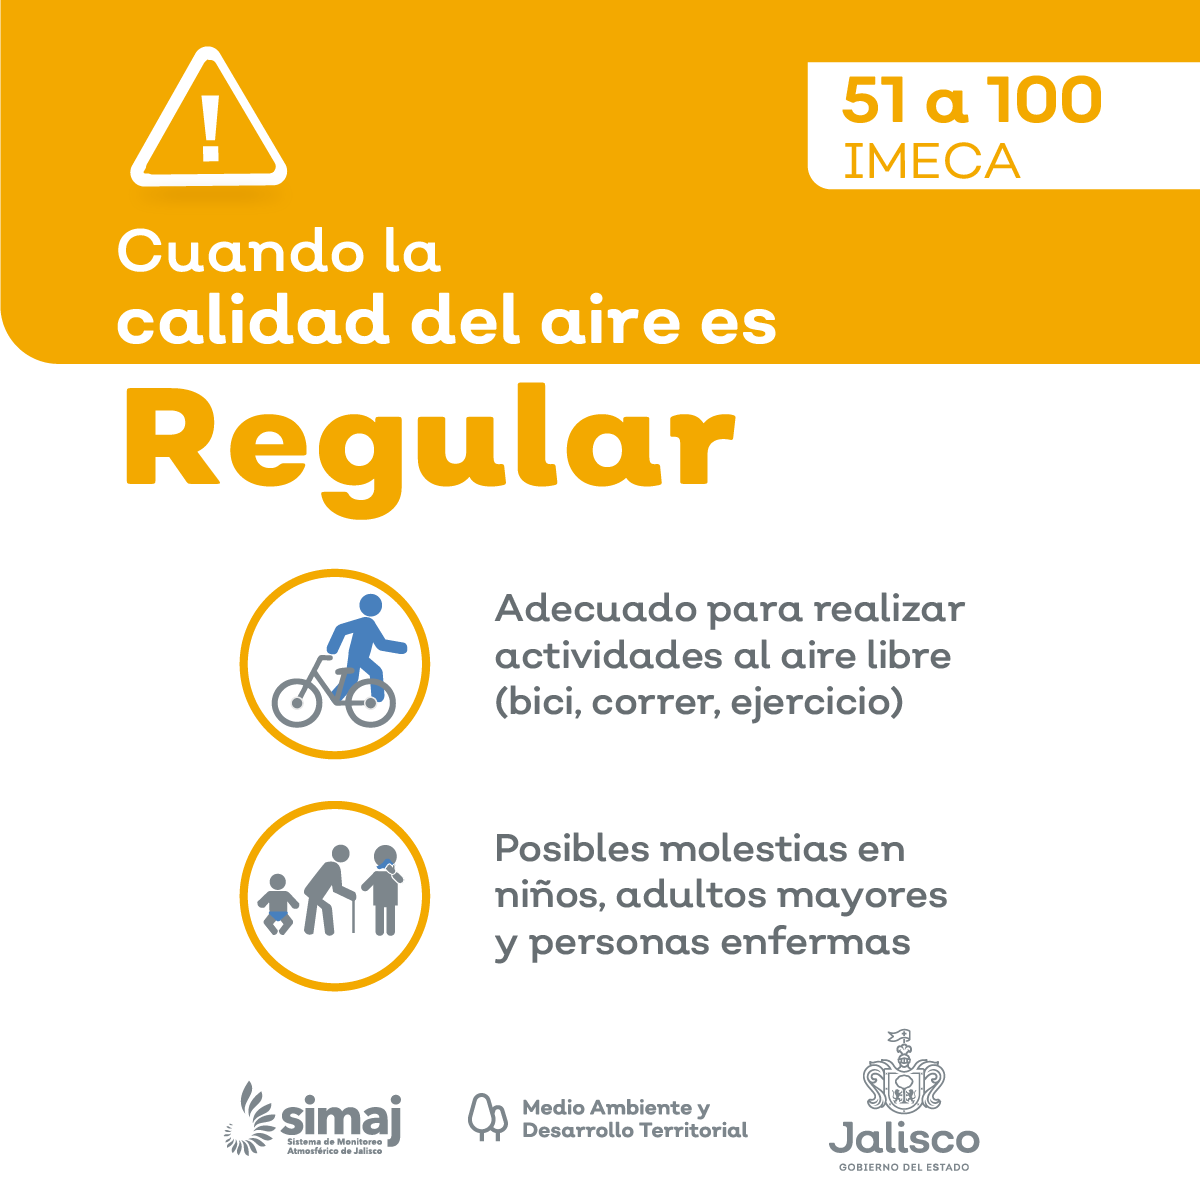 mié. 08:00 p.m. En #AMG la #CalidadDelAire Promedio es : REGULAR, nivel máximo registrado 100 puntos IMECA en Las Pintas Consulta Índice de calidad del aire en AMG : aire.jalisco.gob.mx